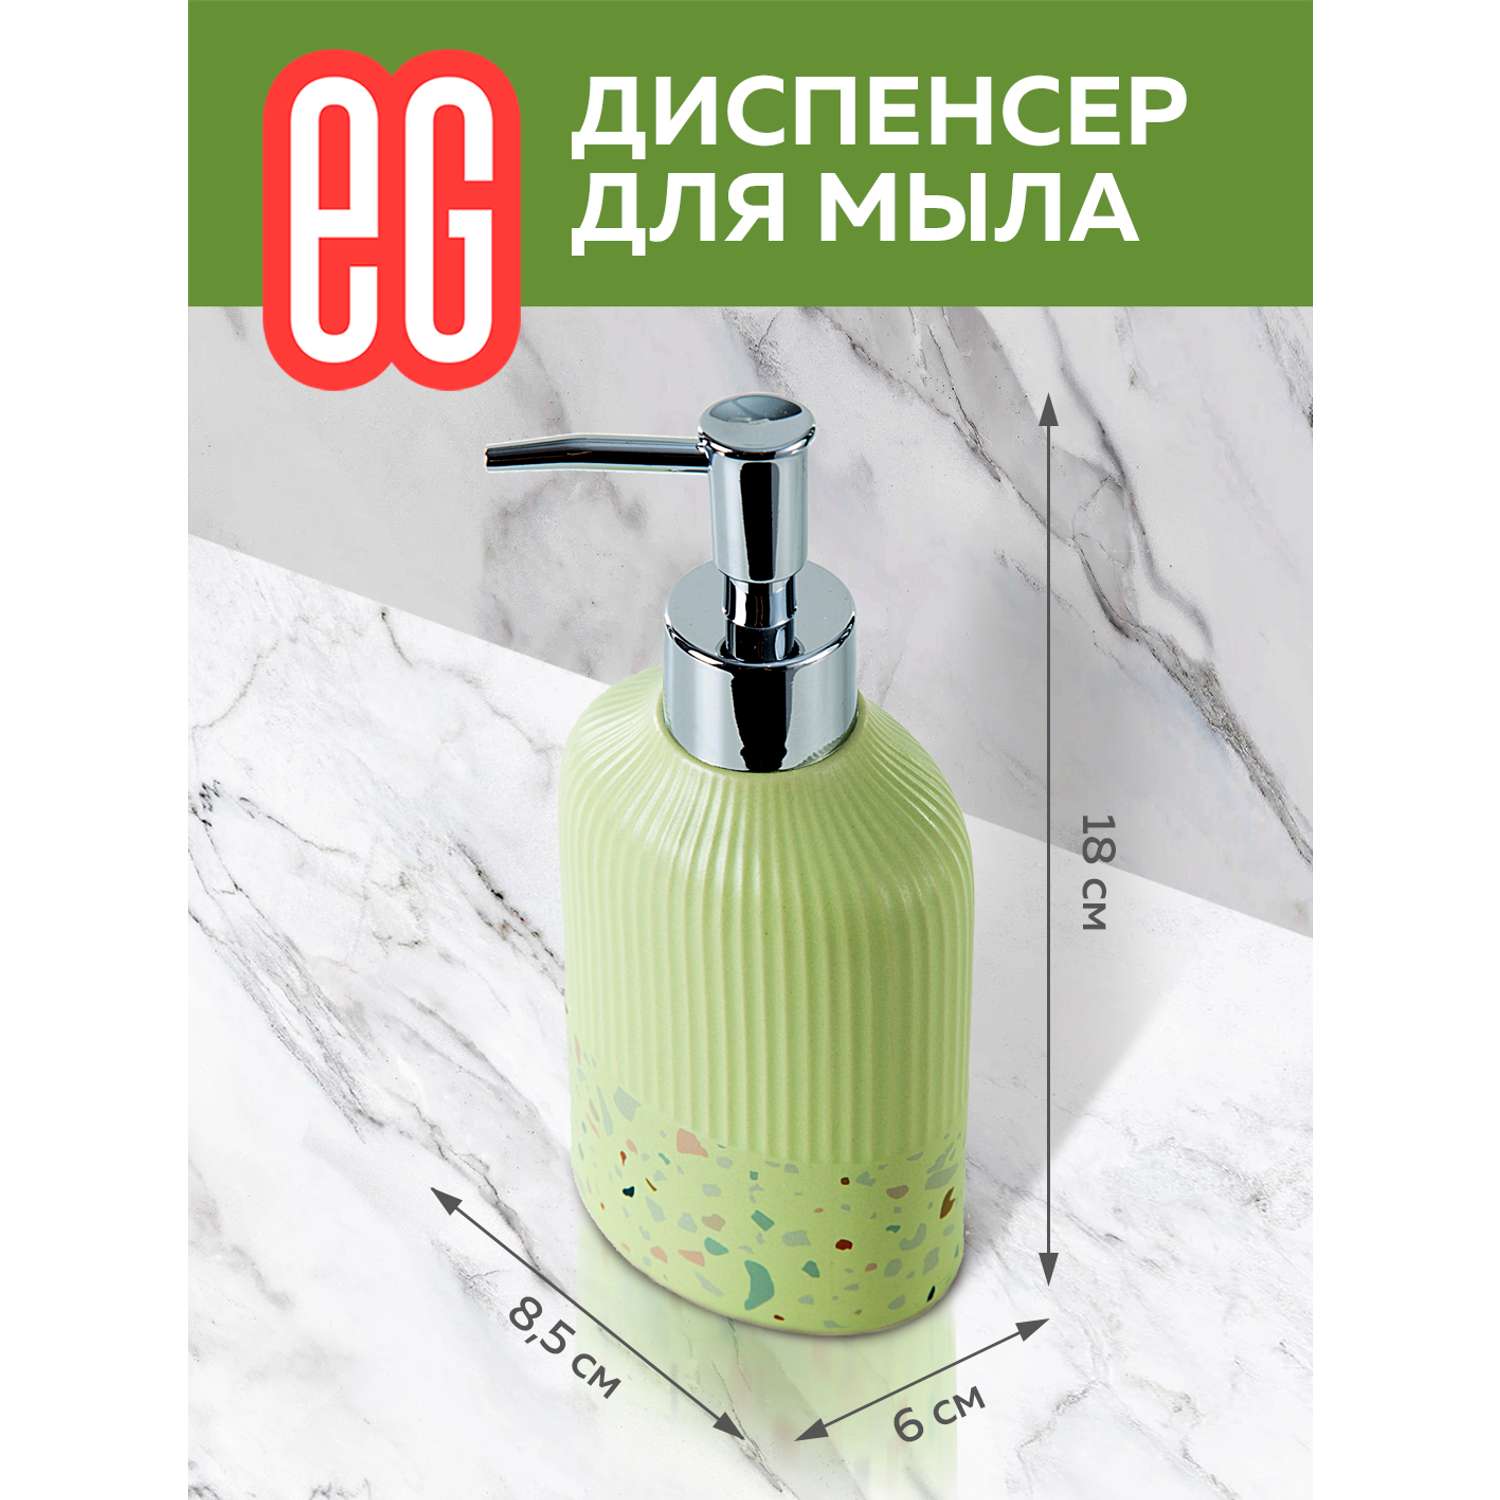 Диспенсер для мыла ЕВРОГАРАНТ Albero керамогранит - фото 2